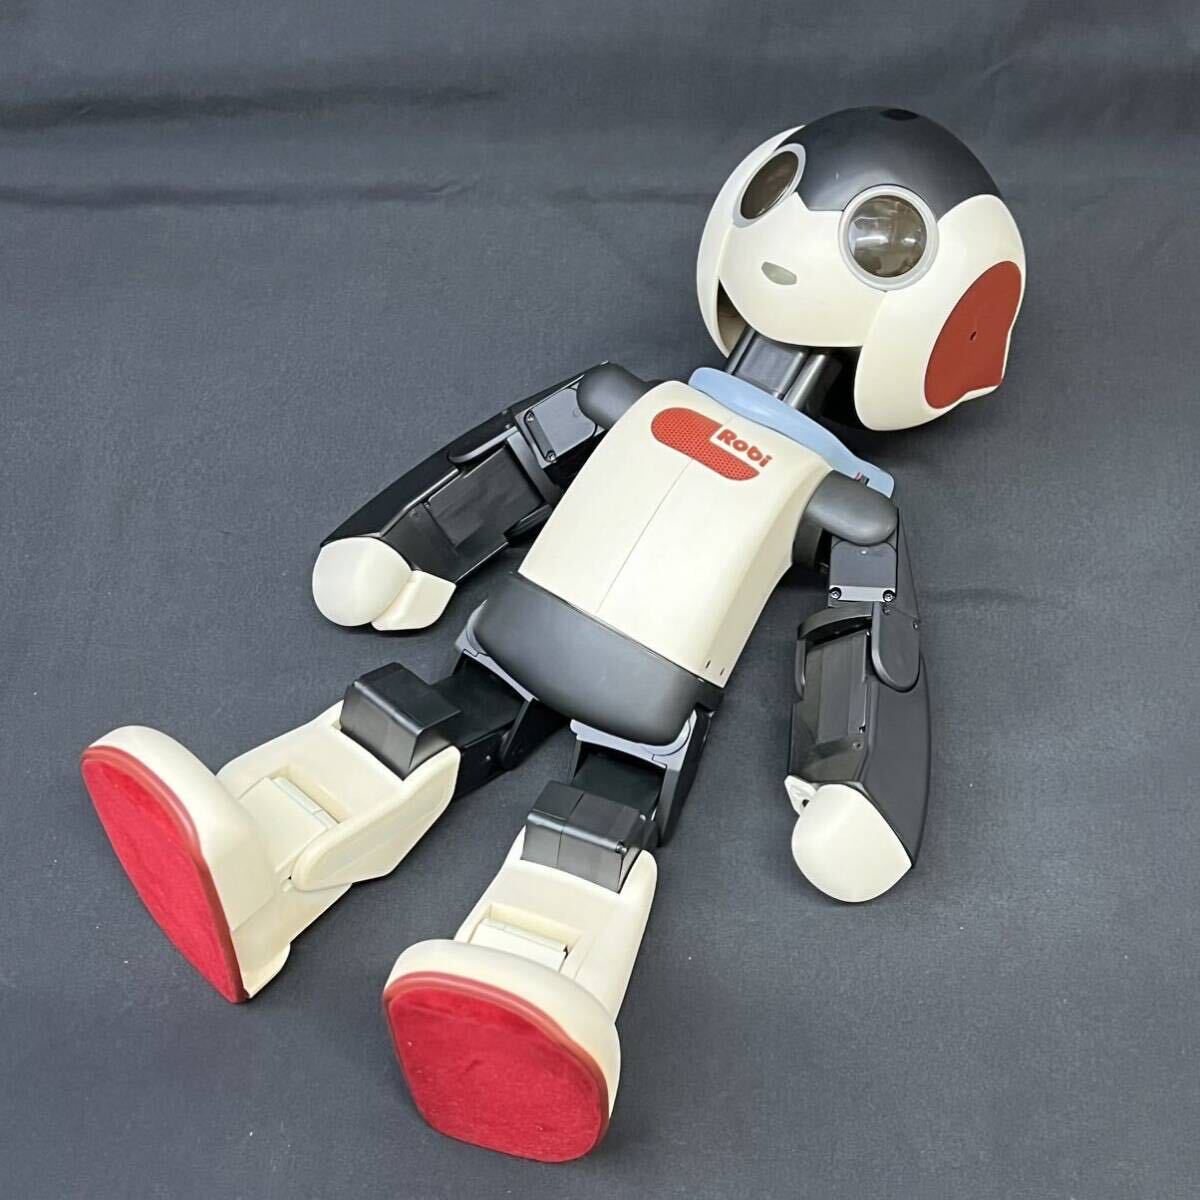 デアゴスティーニ DeAGOSTINI Robi ロビ No.1〜70 専用バインダー ロボット 現状品 動作未確認の画像2